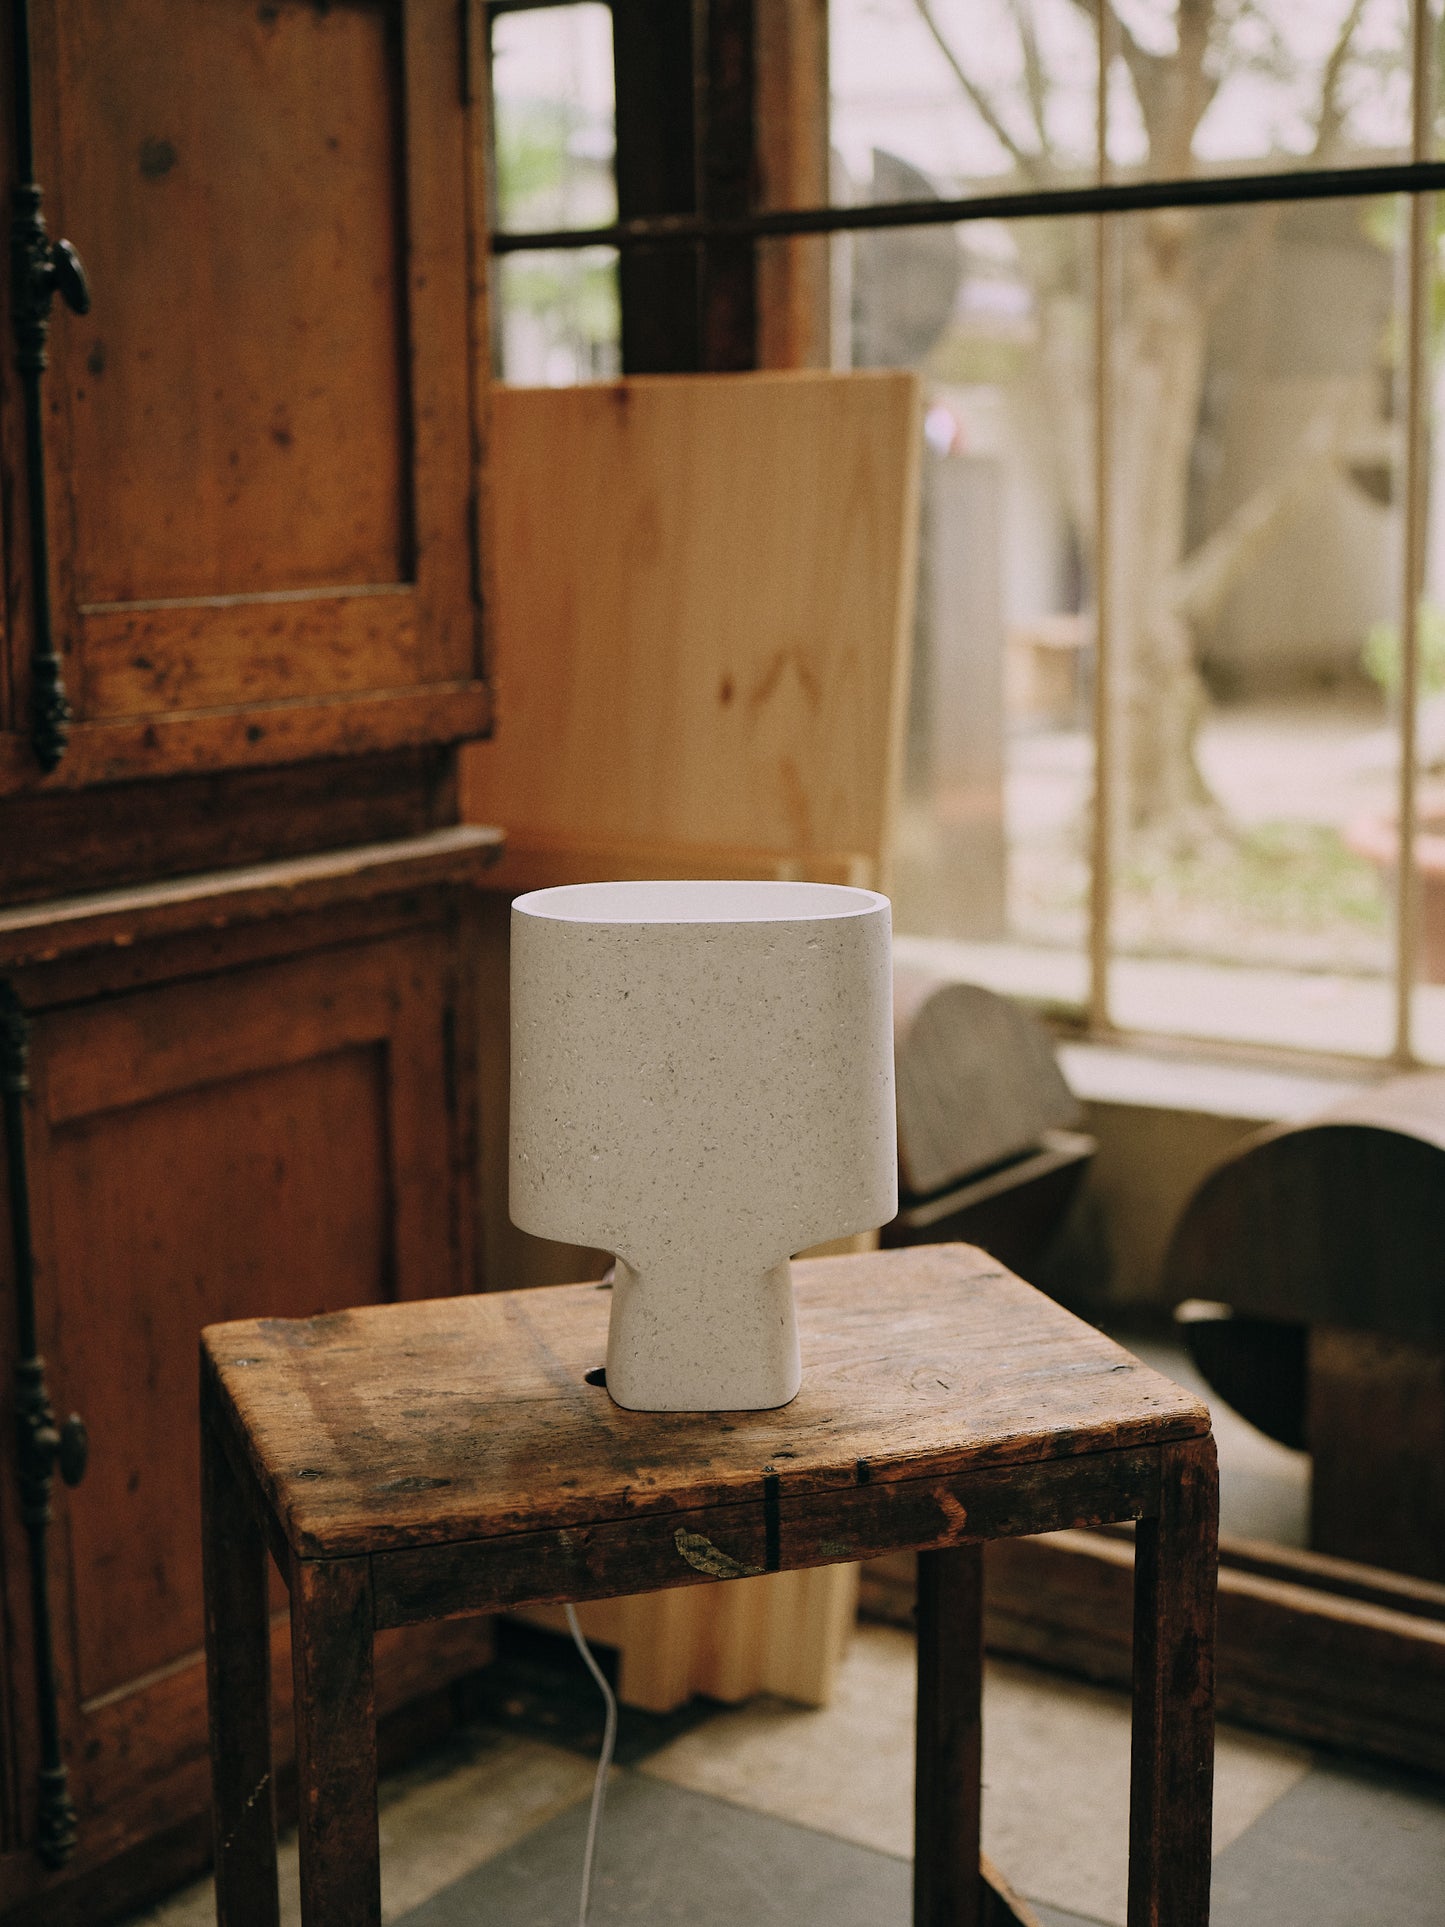 Lampe à poser design blanc naturel blanche sur tabouret en bois et table d'appoint en bois décoration bois wabi sabi